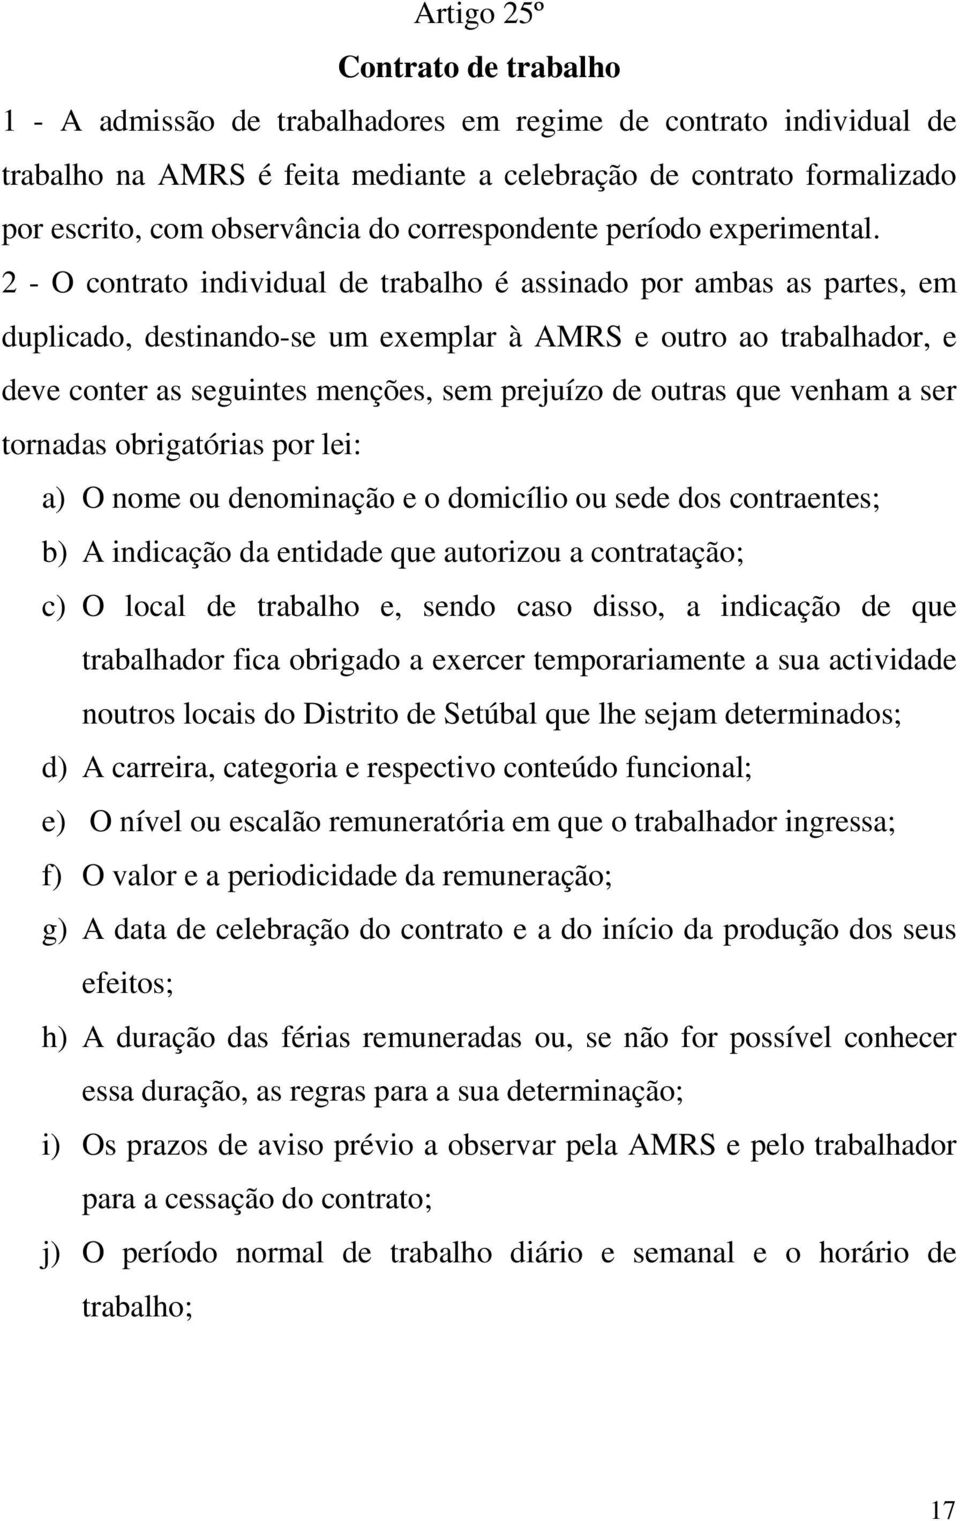 2 - O contrato individual de trabalho é assinado por ambas as partes, em duplicado, destinando-se um exemplar à AMRS e outro ao trabalhador, e deve conter as seguintes menções, sem prejuízo de outras